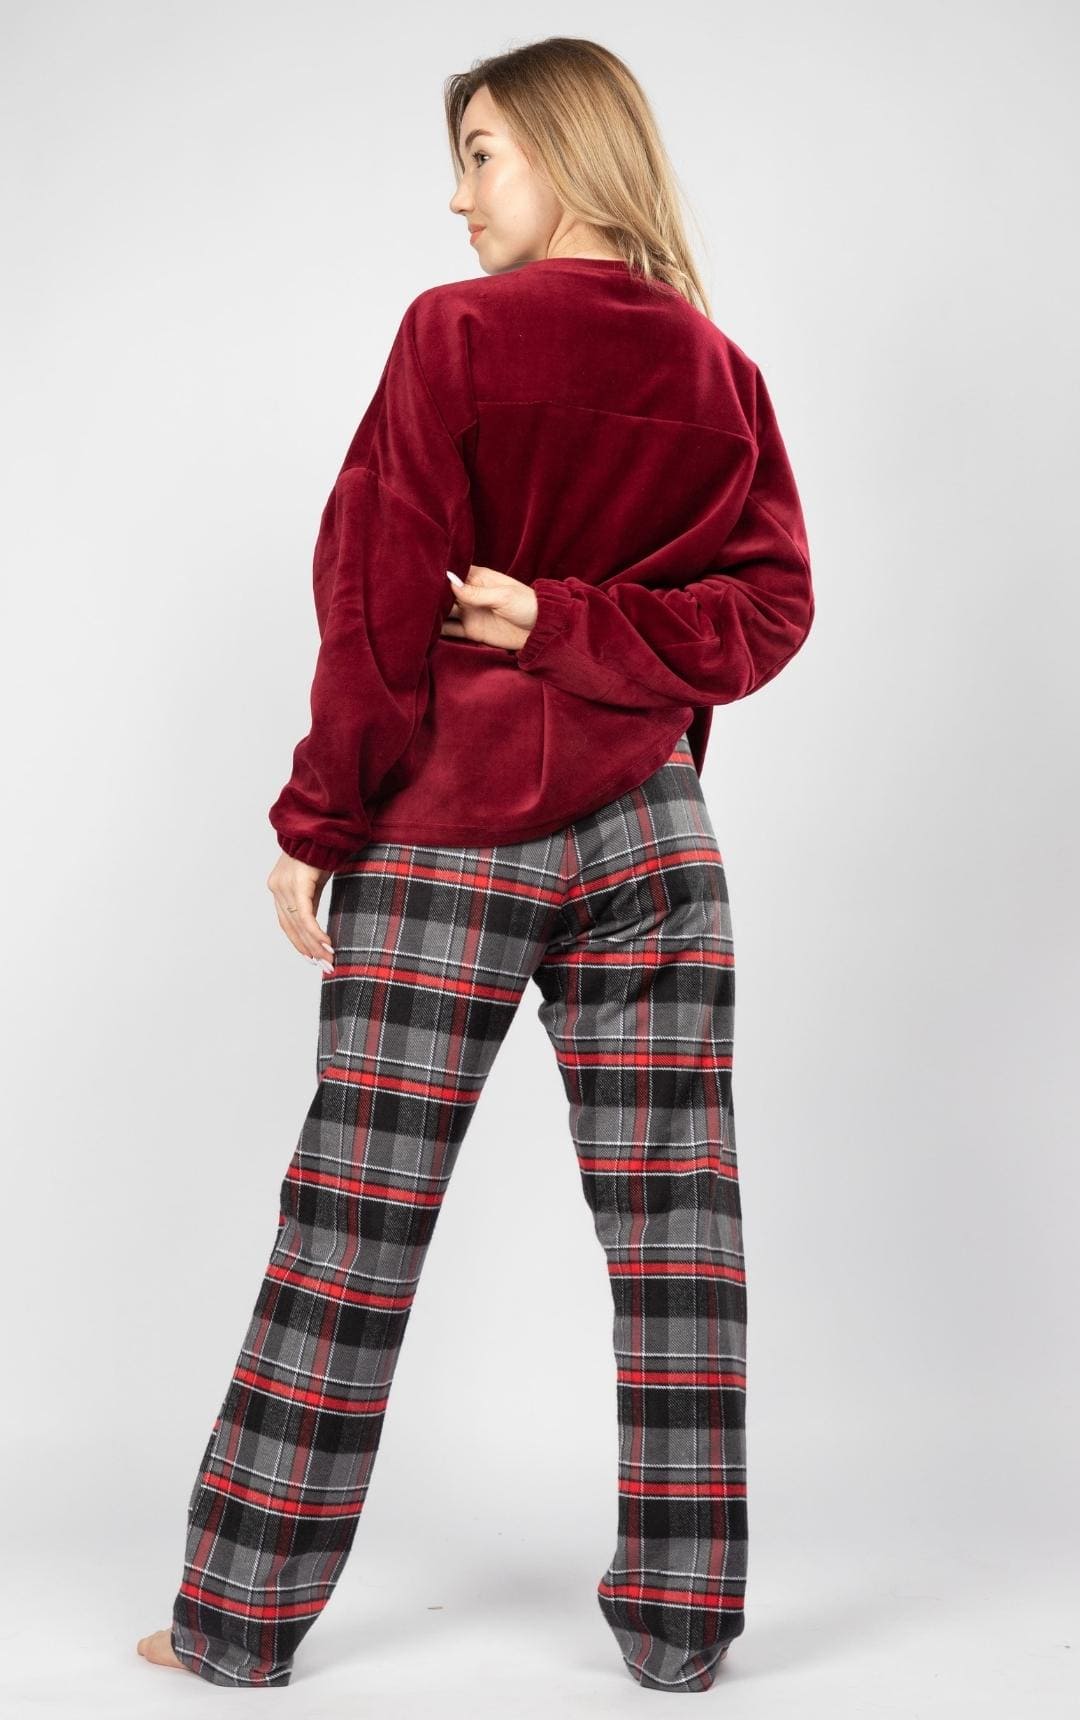 Women Christmas Oversized Pajama with Check Pants